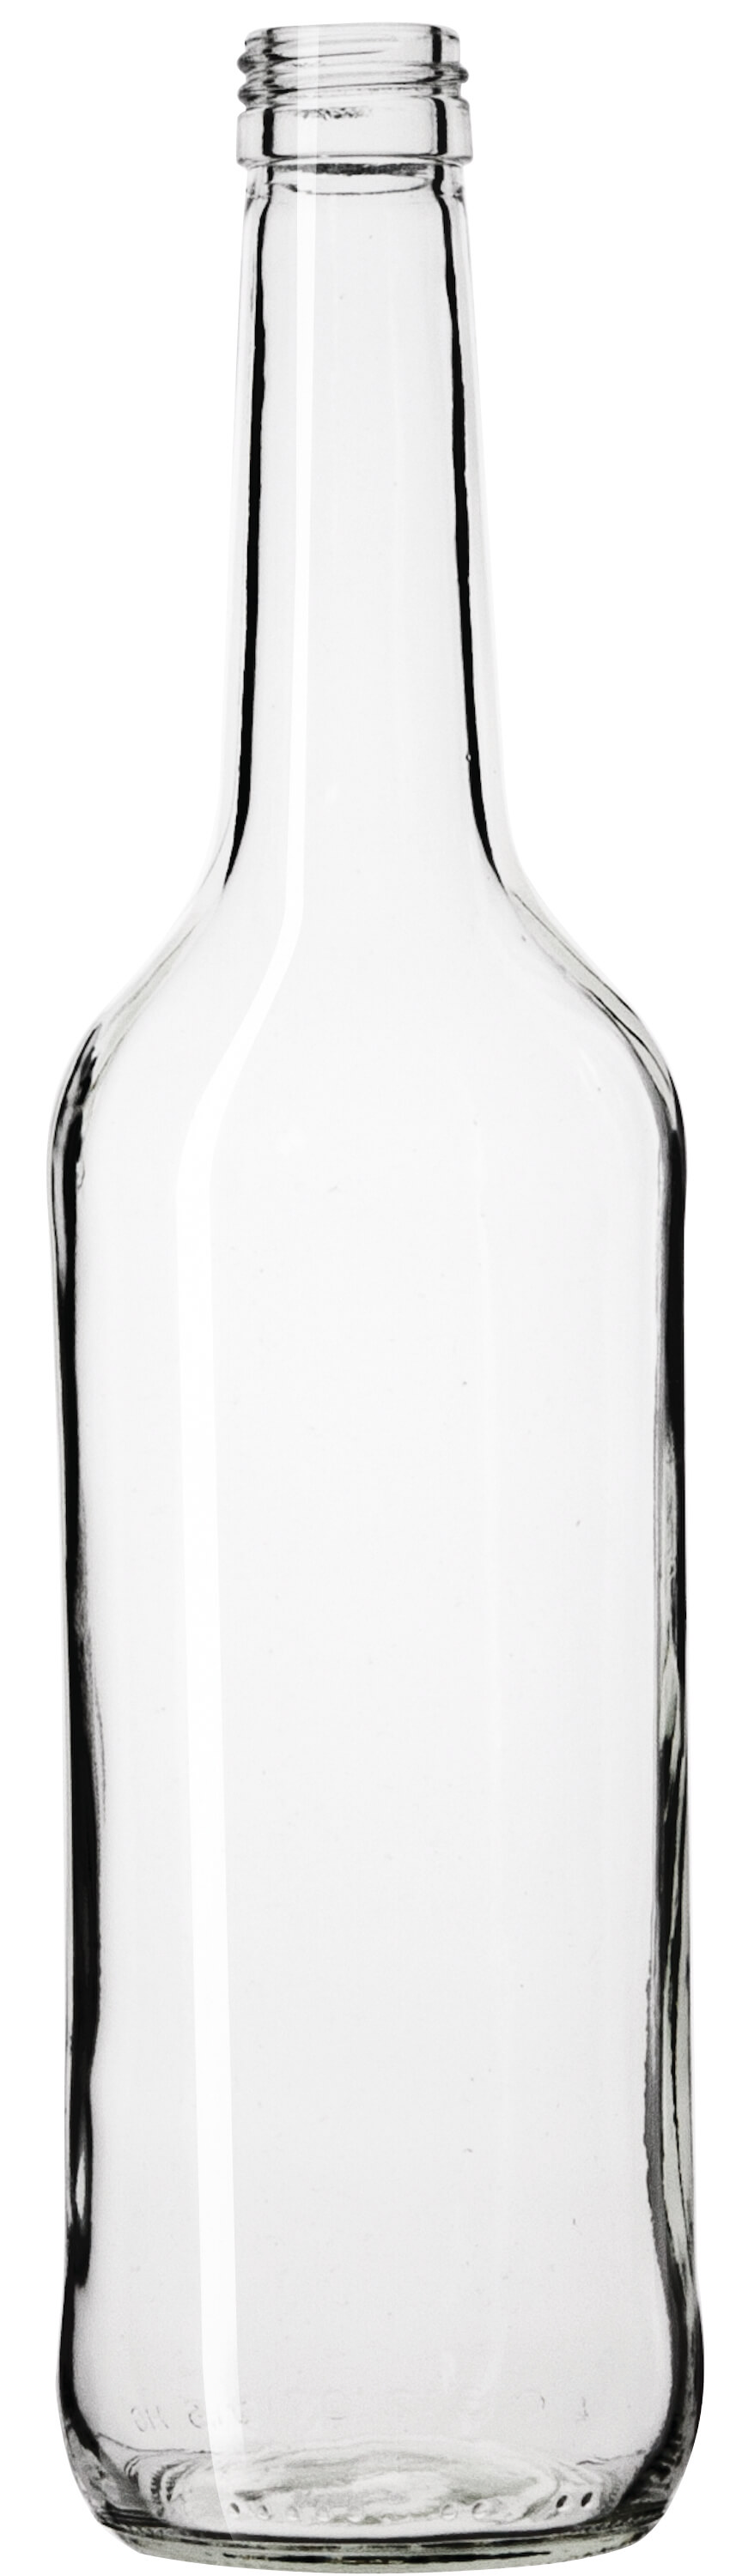 Glass bottle, clear - 700ml